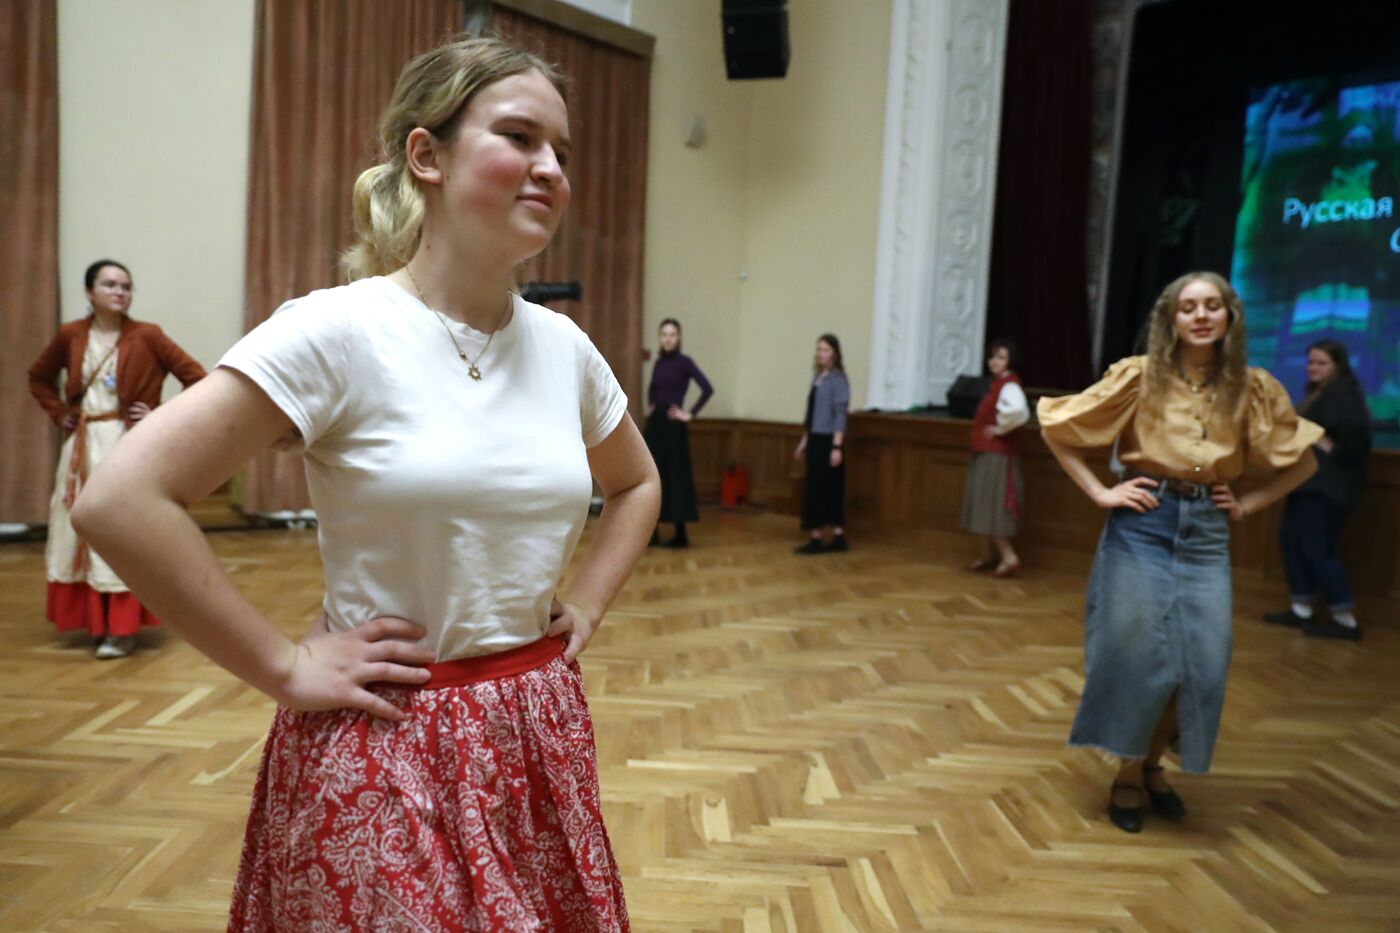 Выставка "Россия". Урок по традиционной хореографии